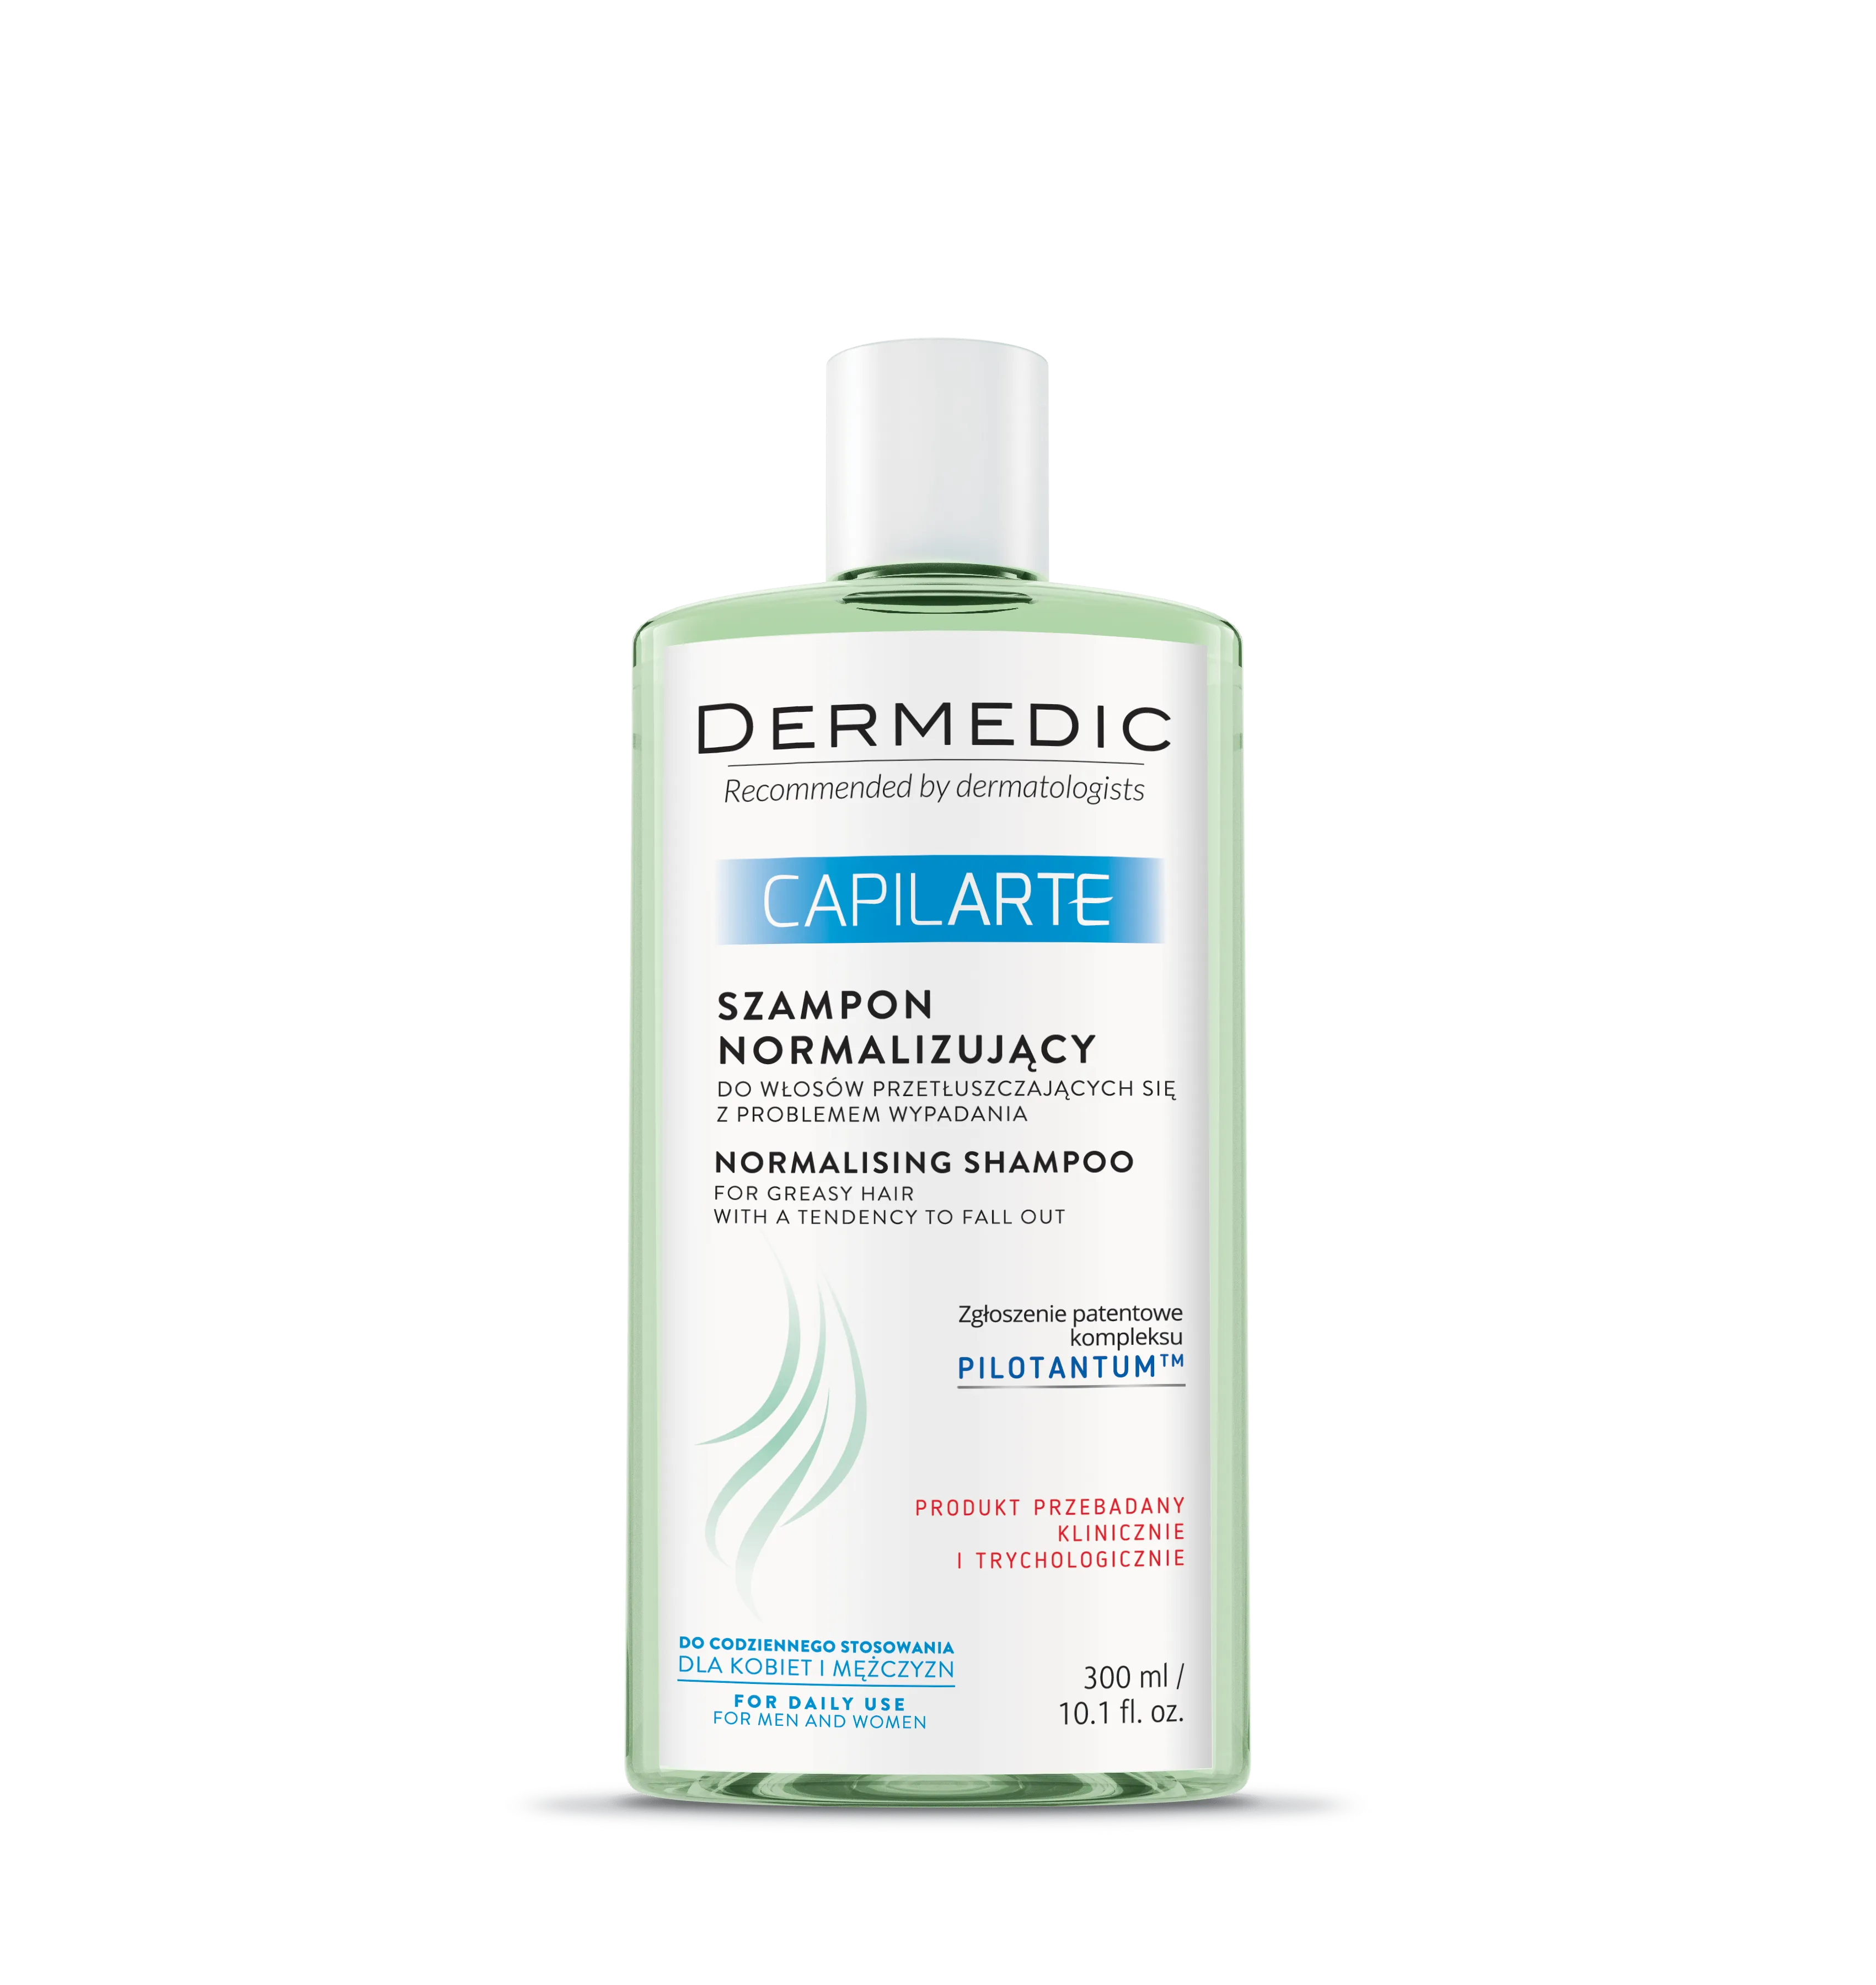 Dermedic Caplilarte, szampon normalizujący do włosów przetłuszczających się, 300 ml